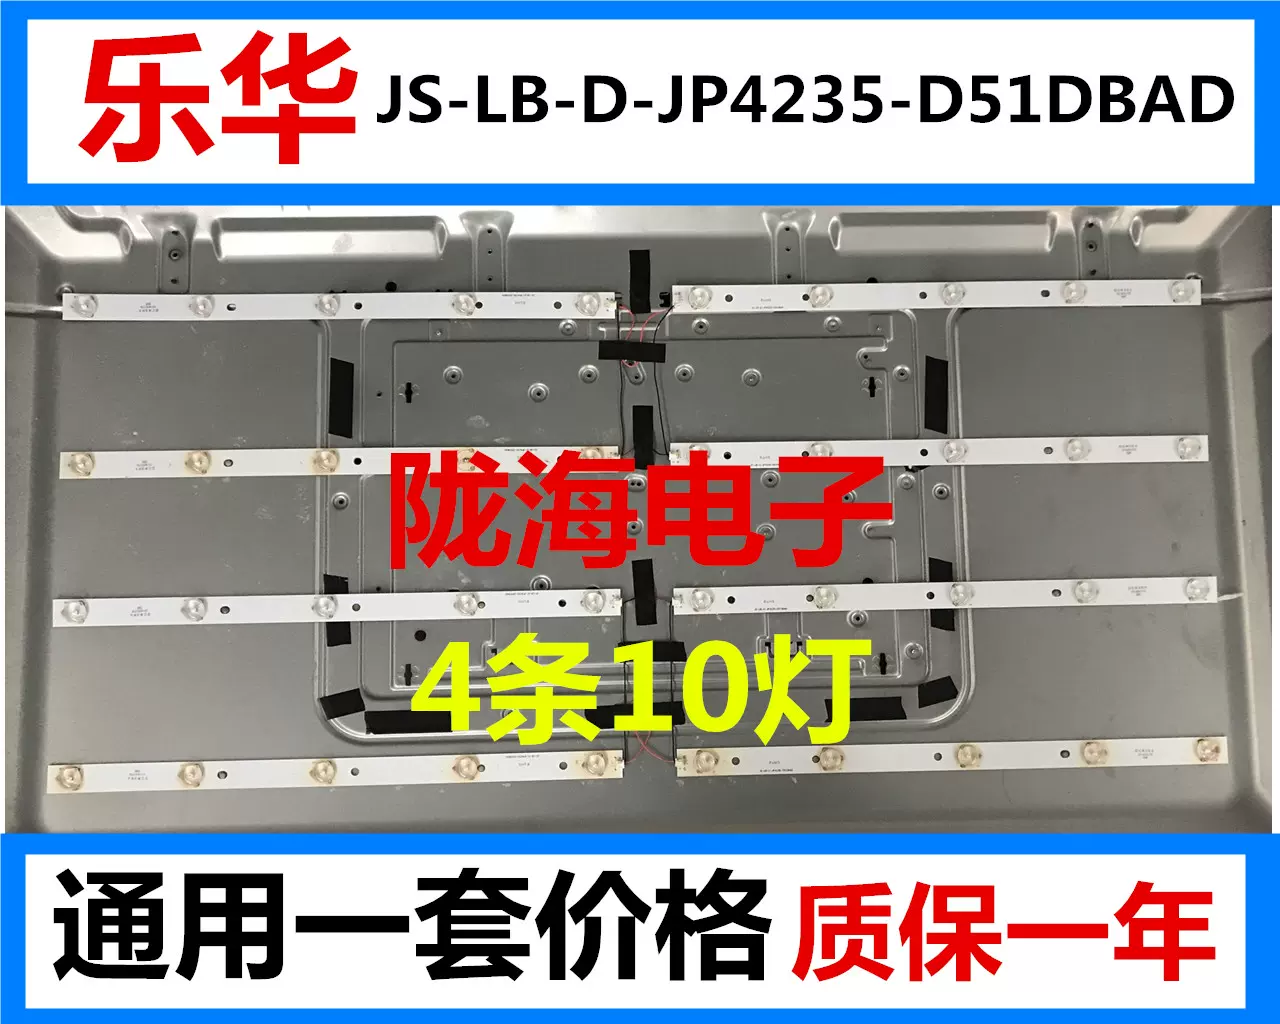 全新乐华10灯JS-LB-D-JP4235-D51DBAD通用一套价格